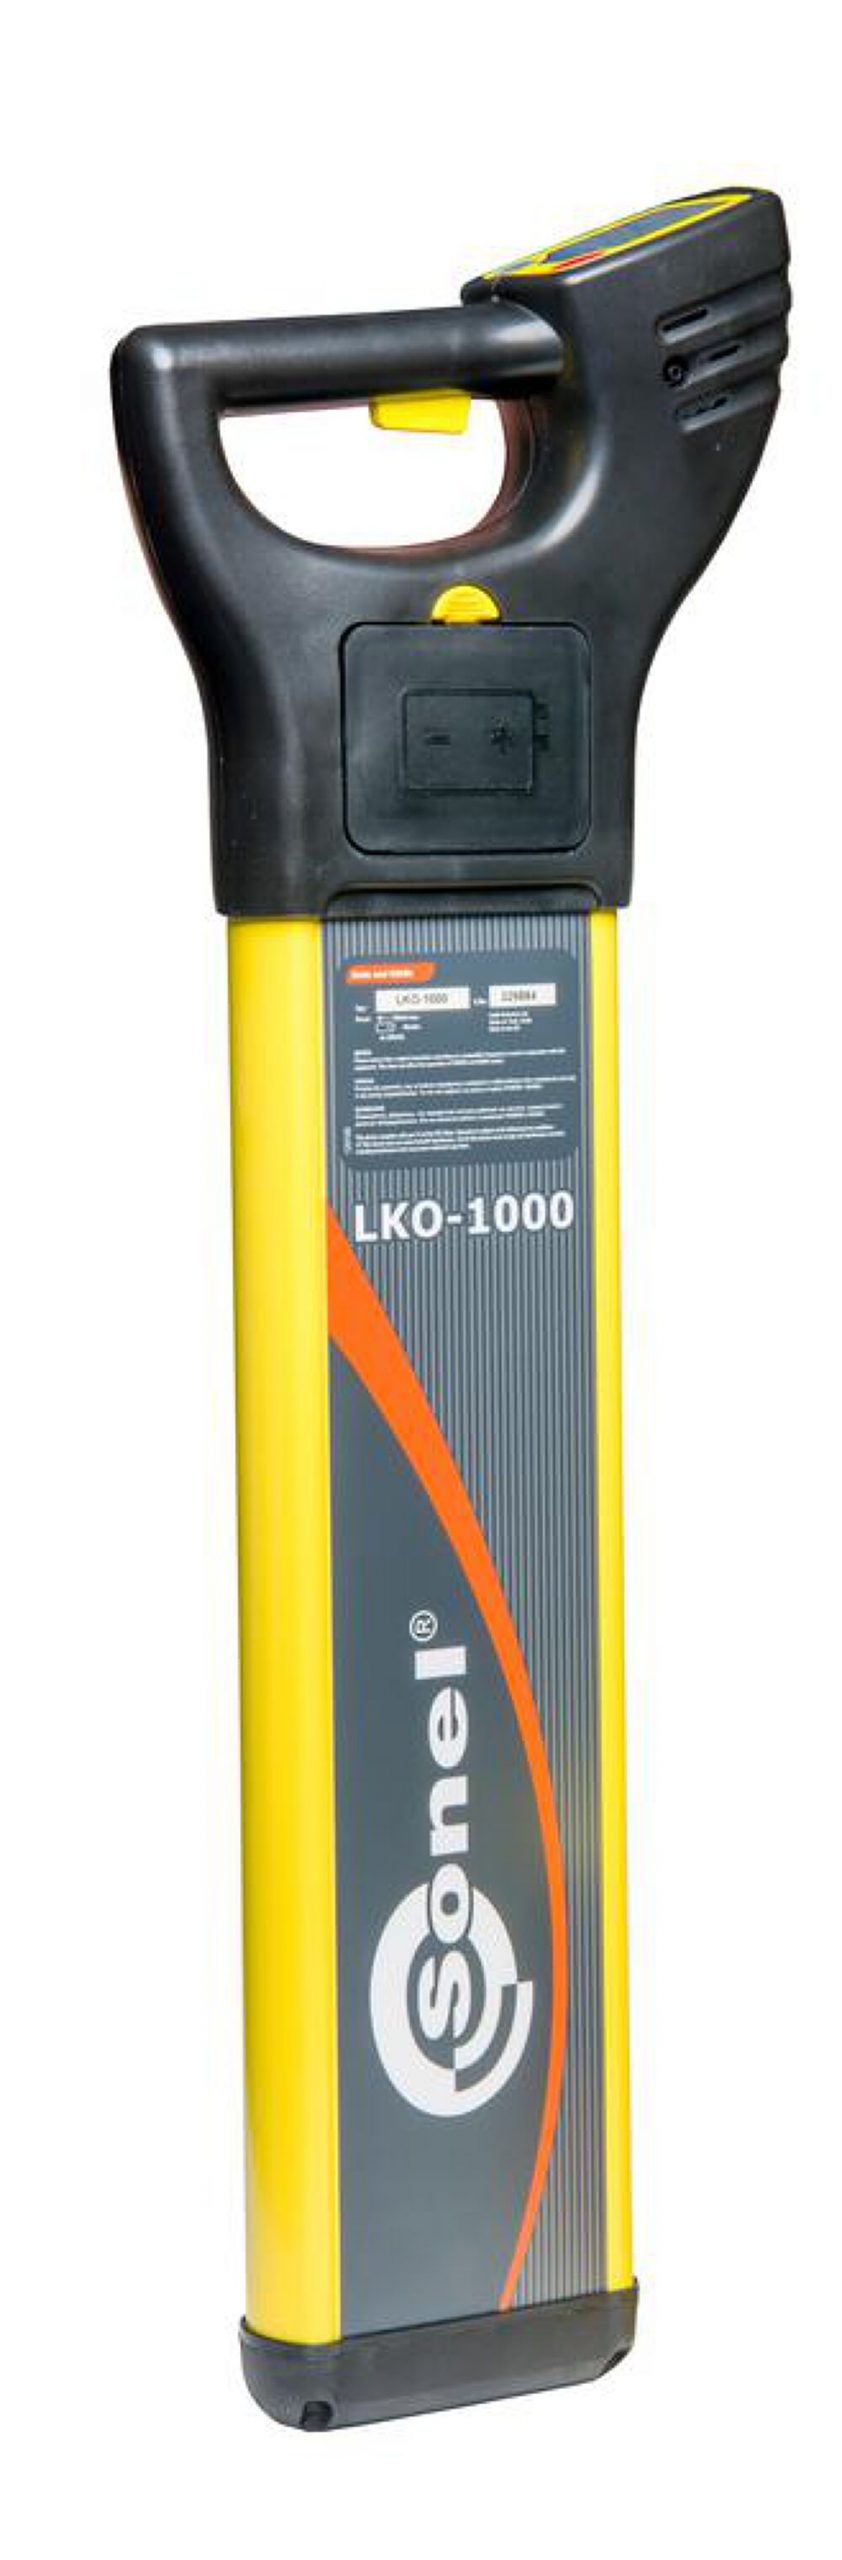 Bộ định vị LKO-1000 (bộ thu) Sonel LKO-1000